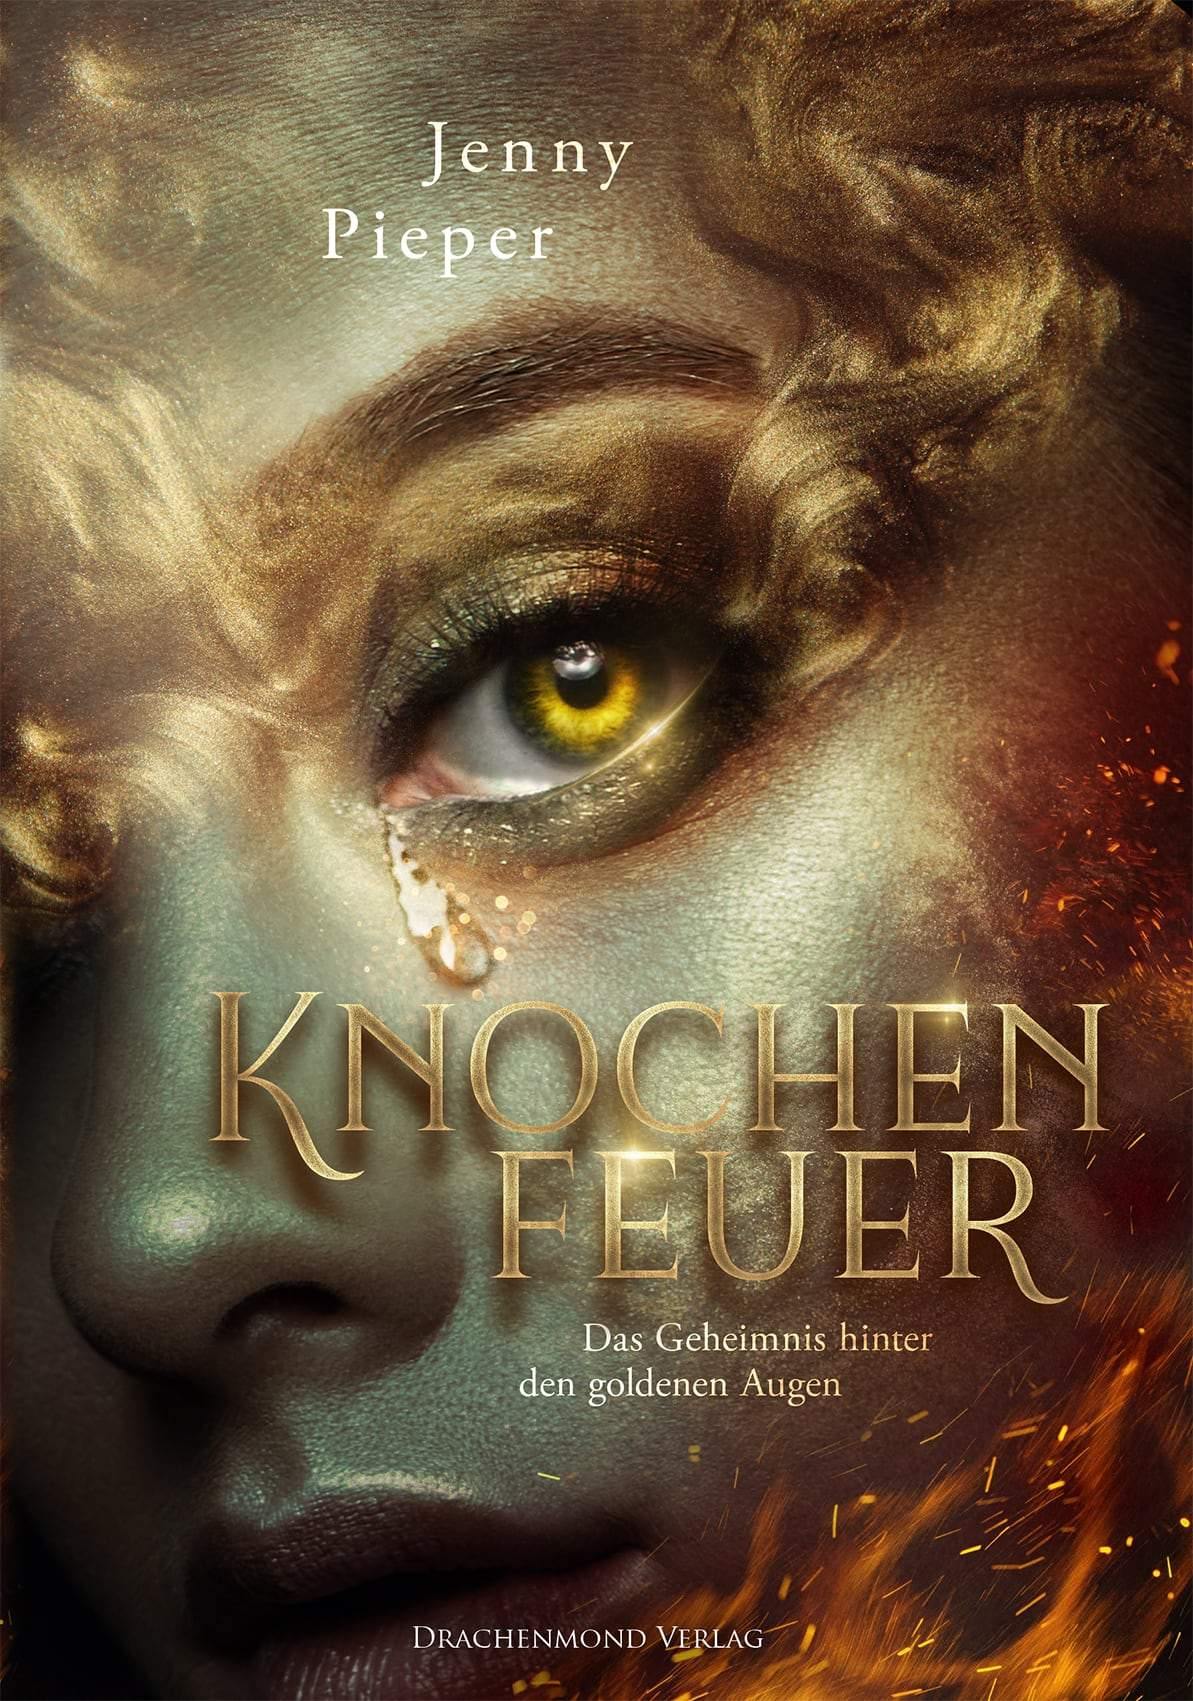 Knochenfeuer - Das Geheimnis hinter den goldenen Augen - Jenny Pieper | Drachenmond Verlag